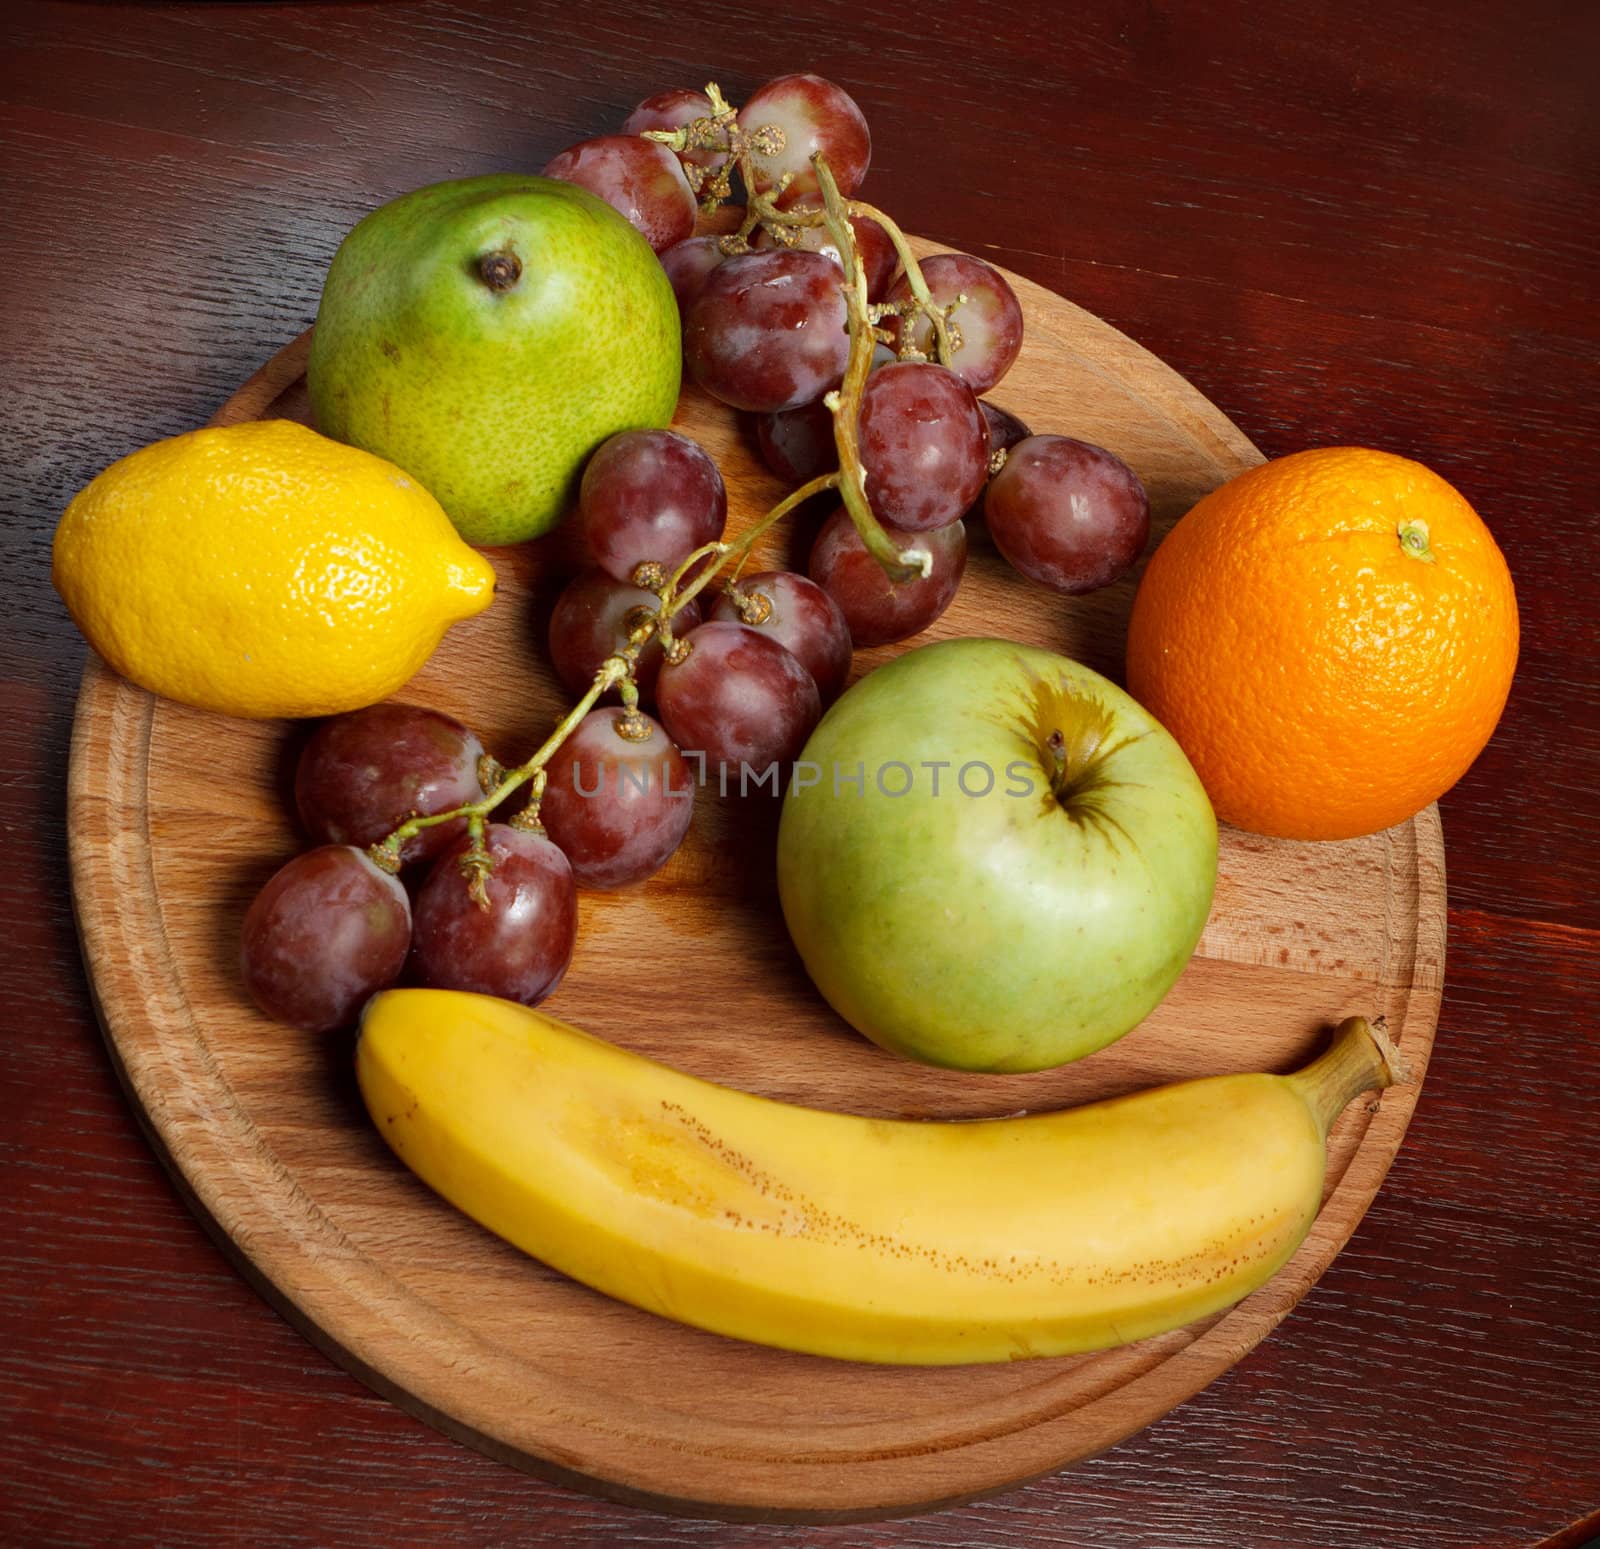 fruits on wooden board by nigerfoxy